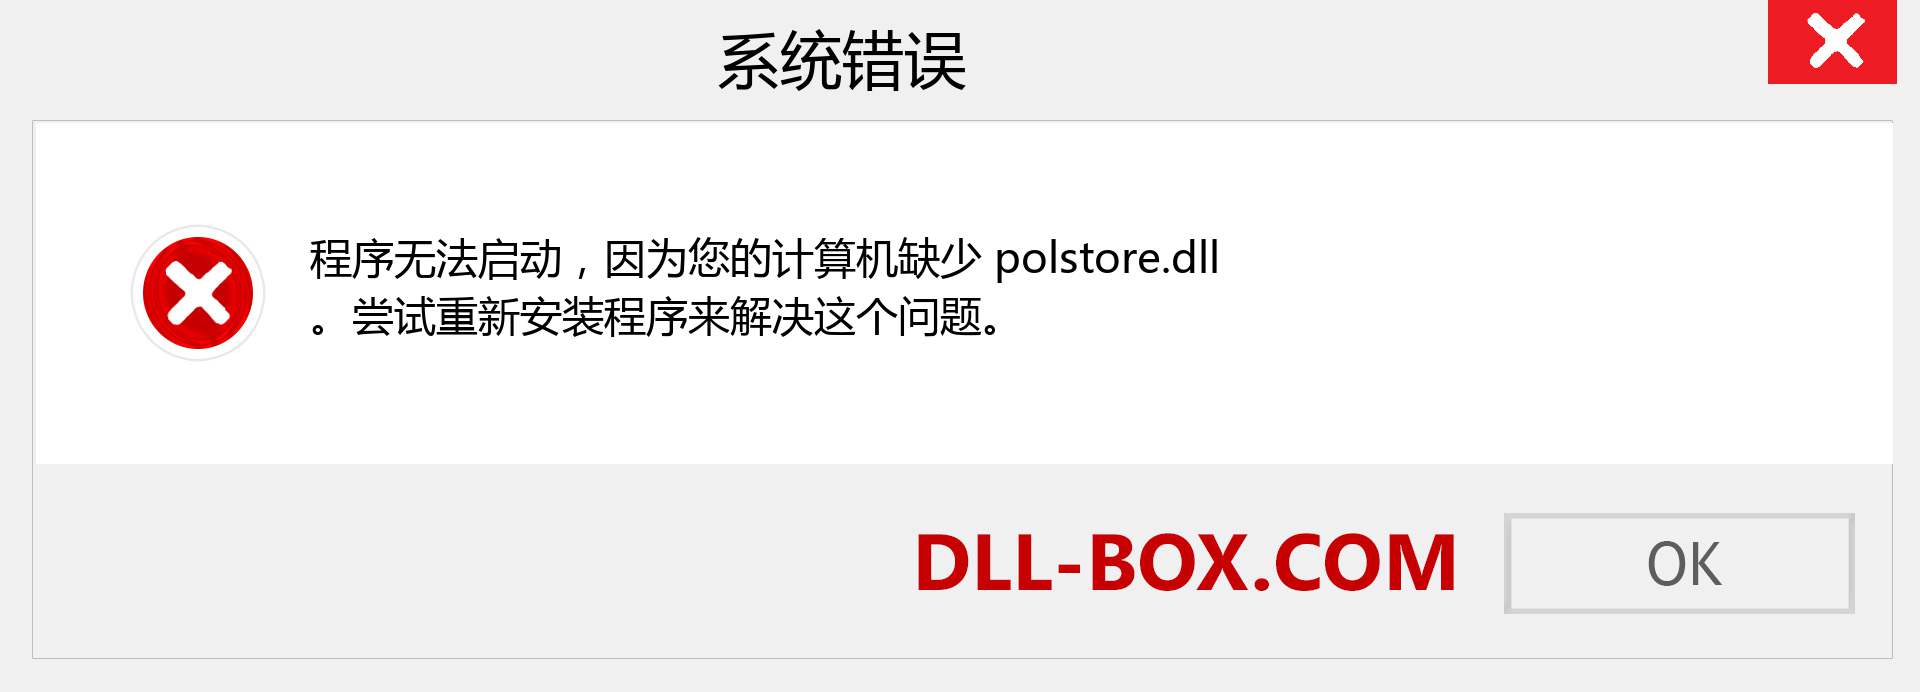 polstore.dll 文件丢失？。 适用于 Windows 7、8、10 的下载 - 修复 Windows、照片、图像上的 polstore dll 丢失错误